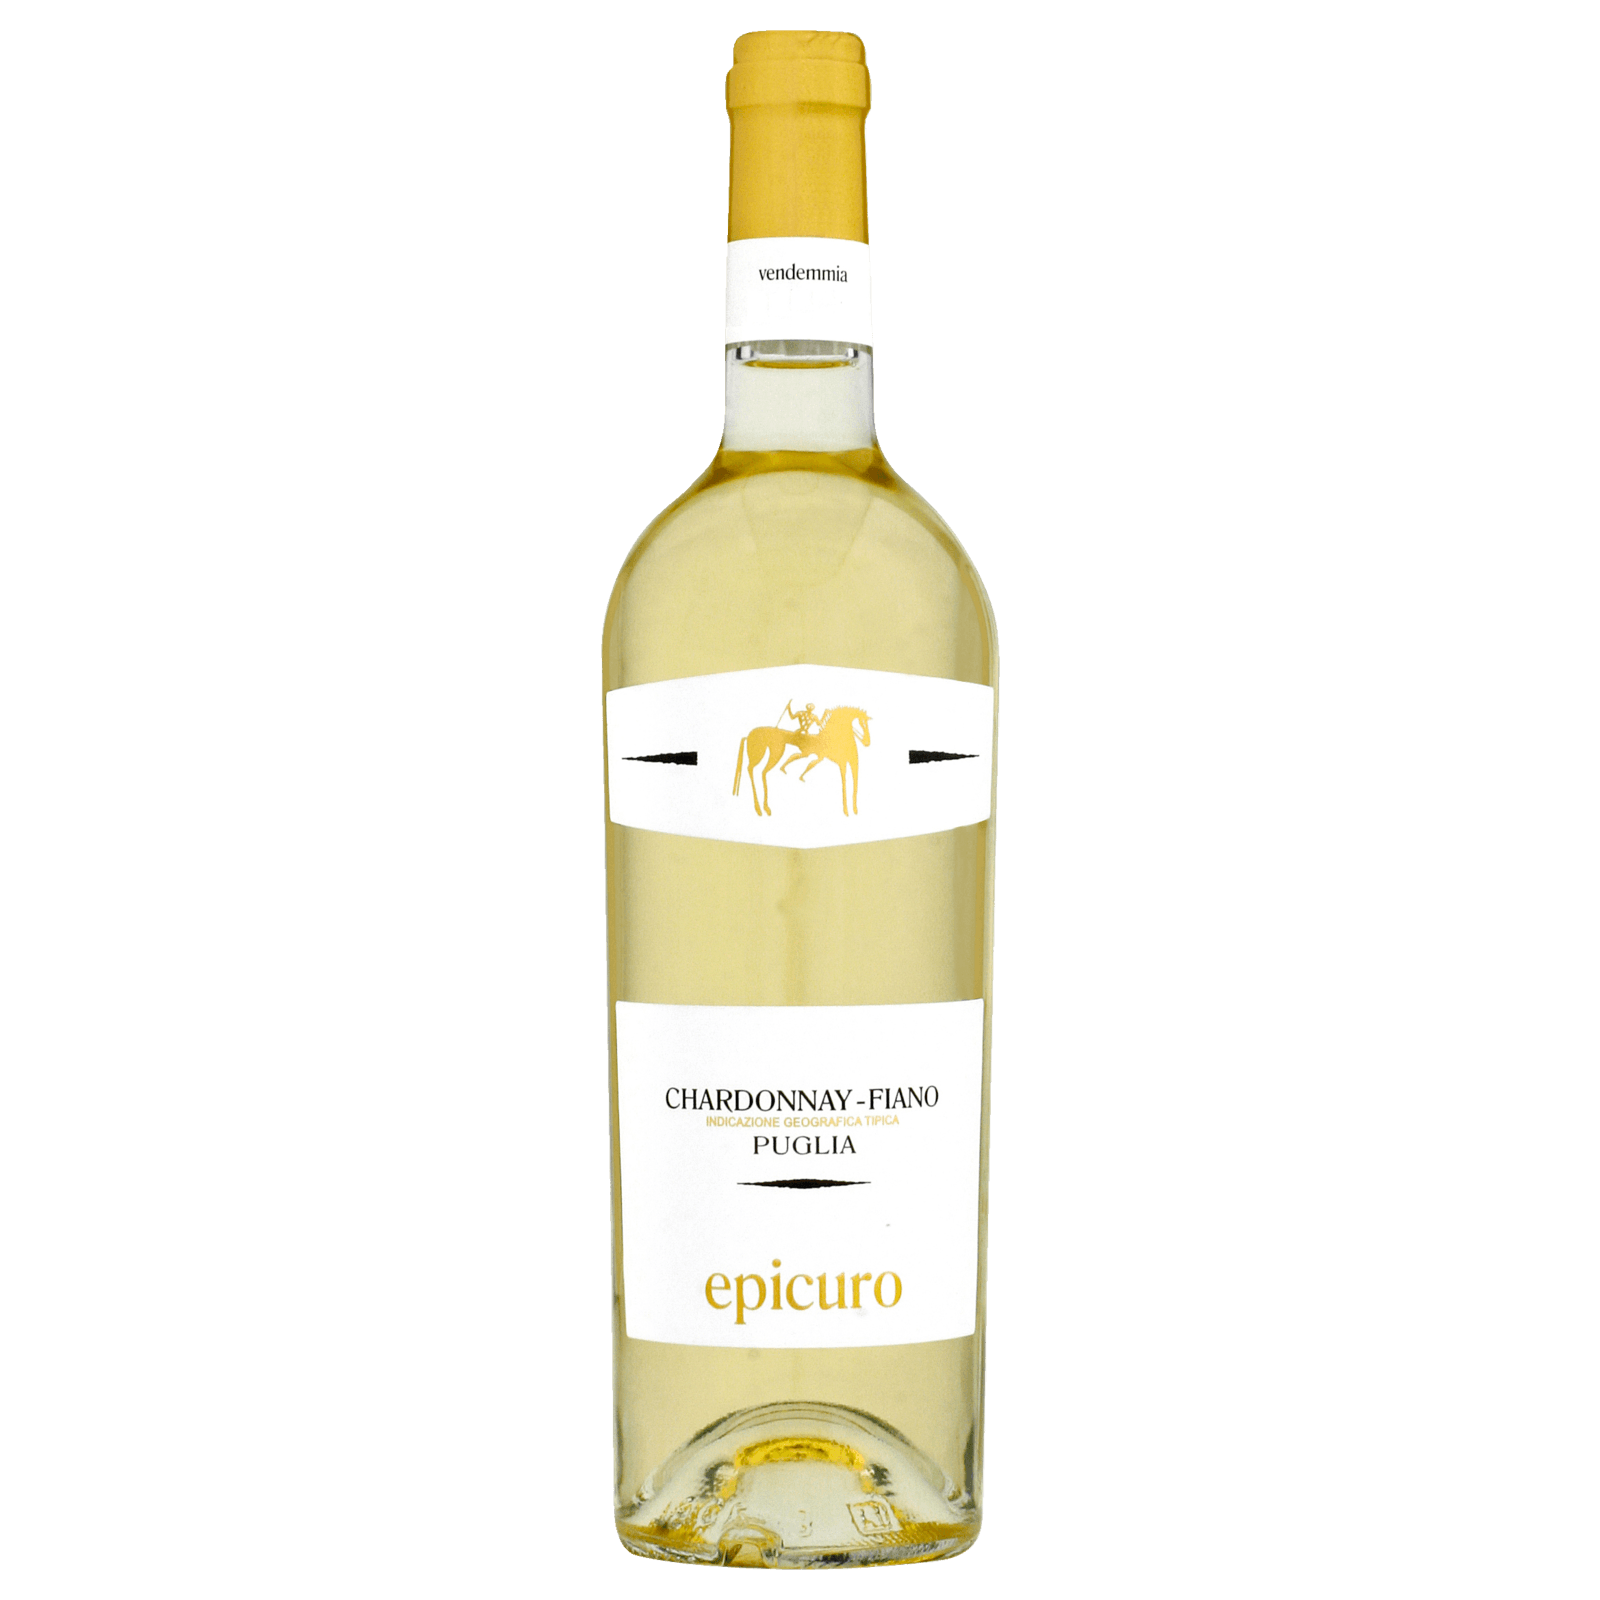 REWE Epicuro Puglia online trocken 0,75l IGP Chardonnay bei Weißwein bestellen!